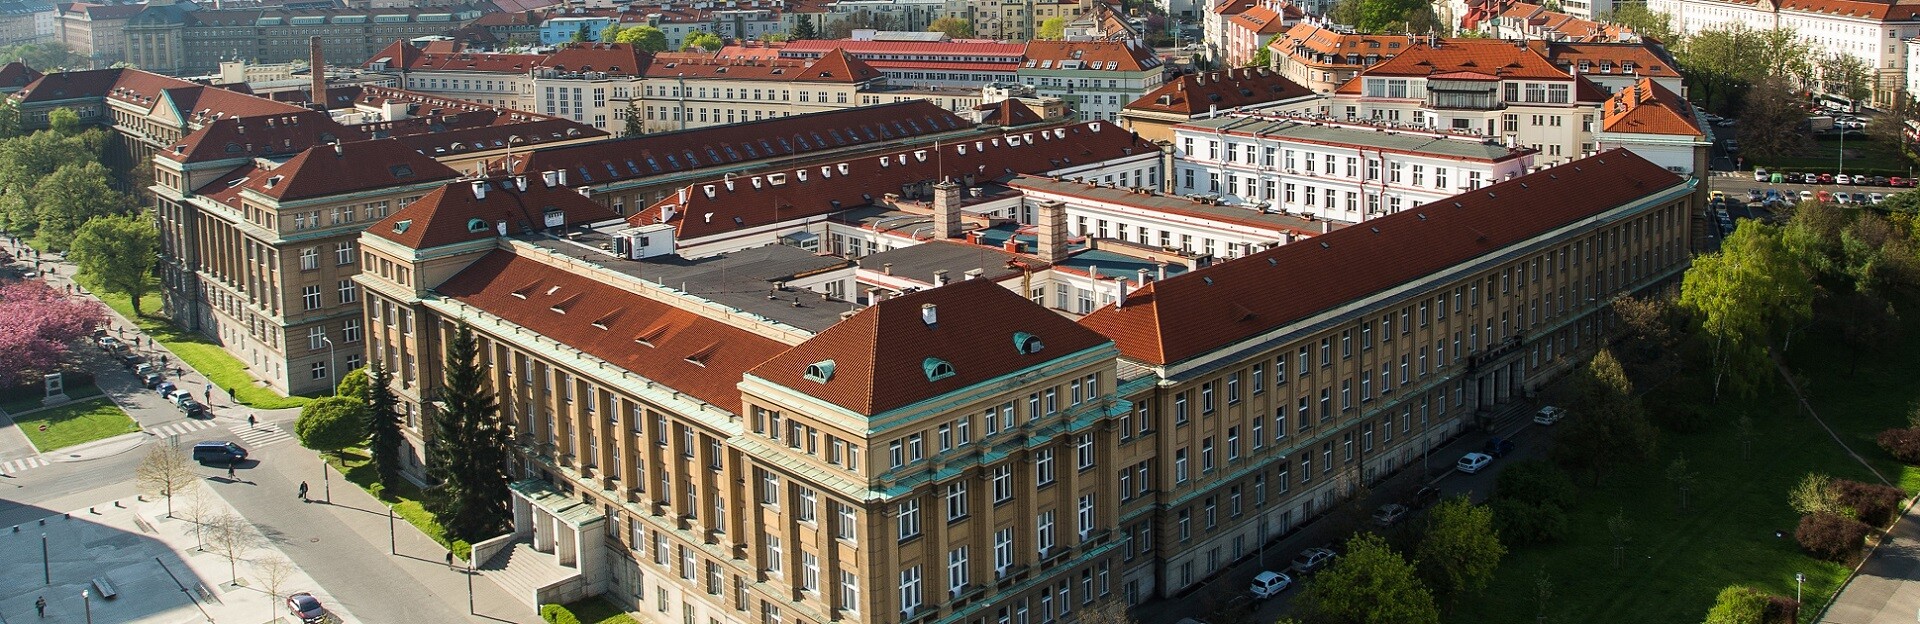 Vysoká škola chemicko-technologická v Praze (VŠCHT)